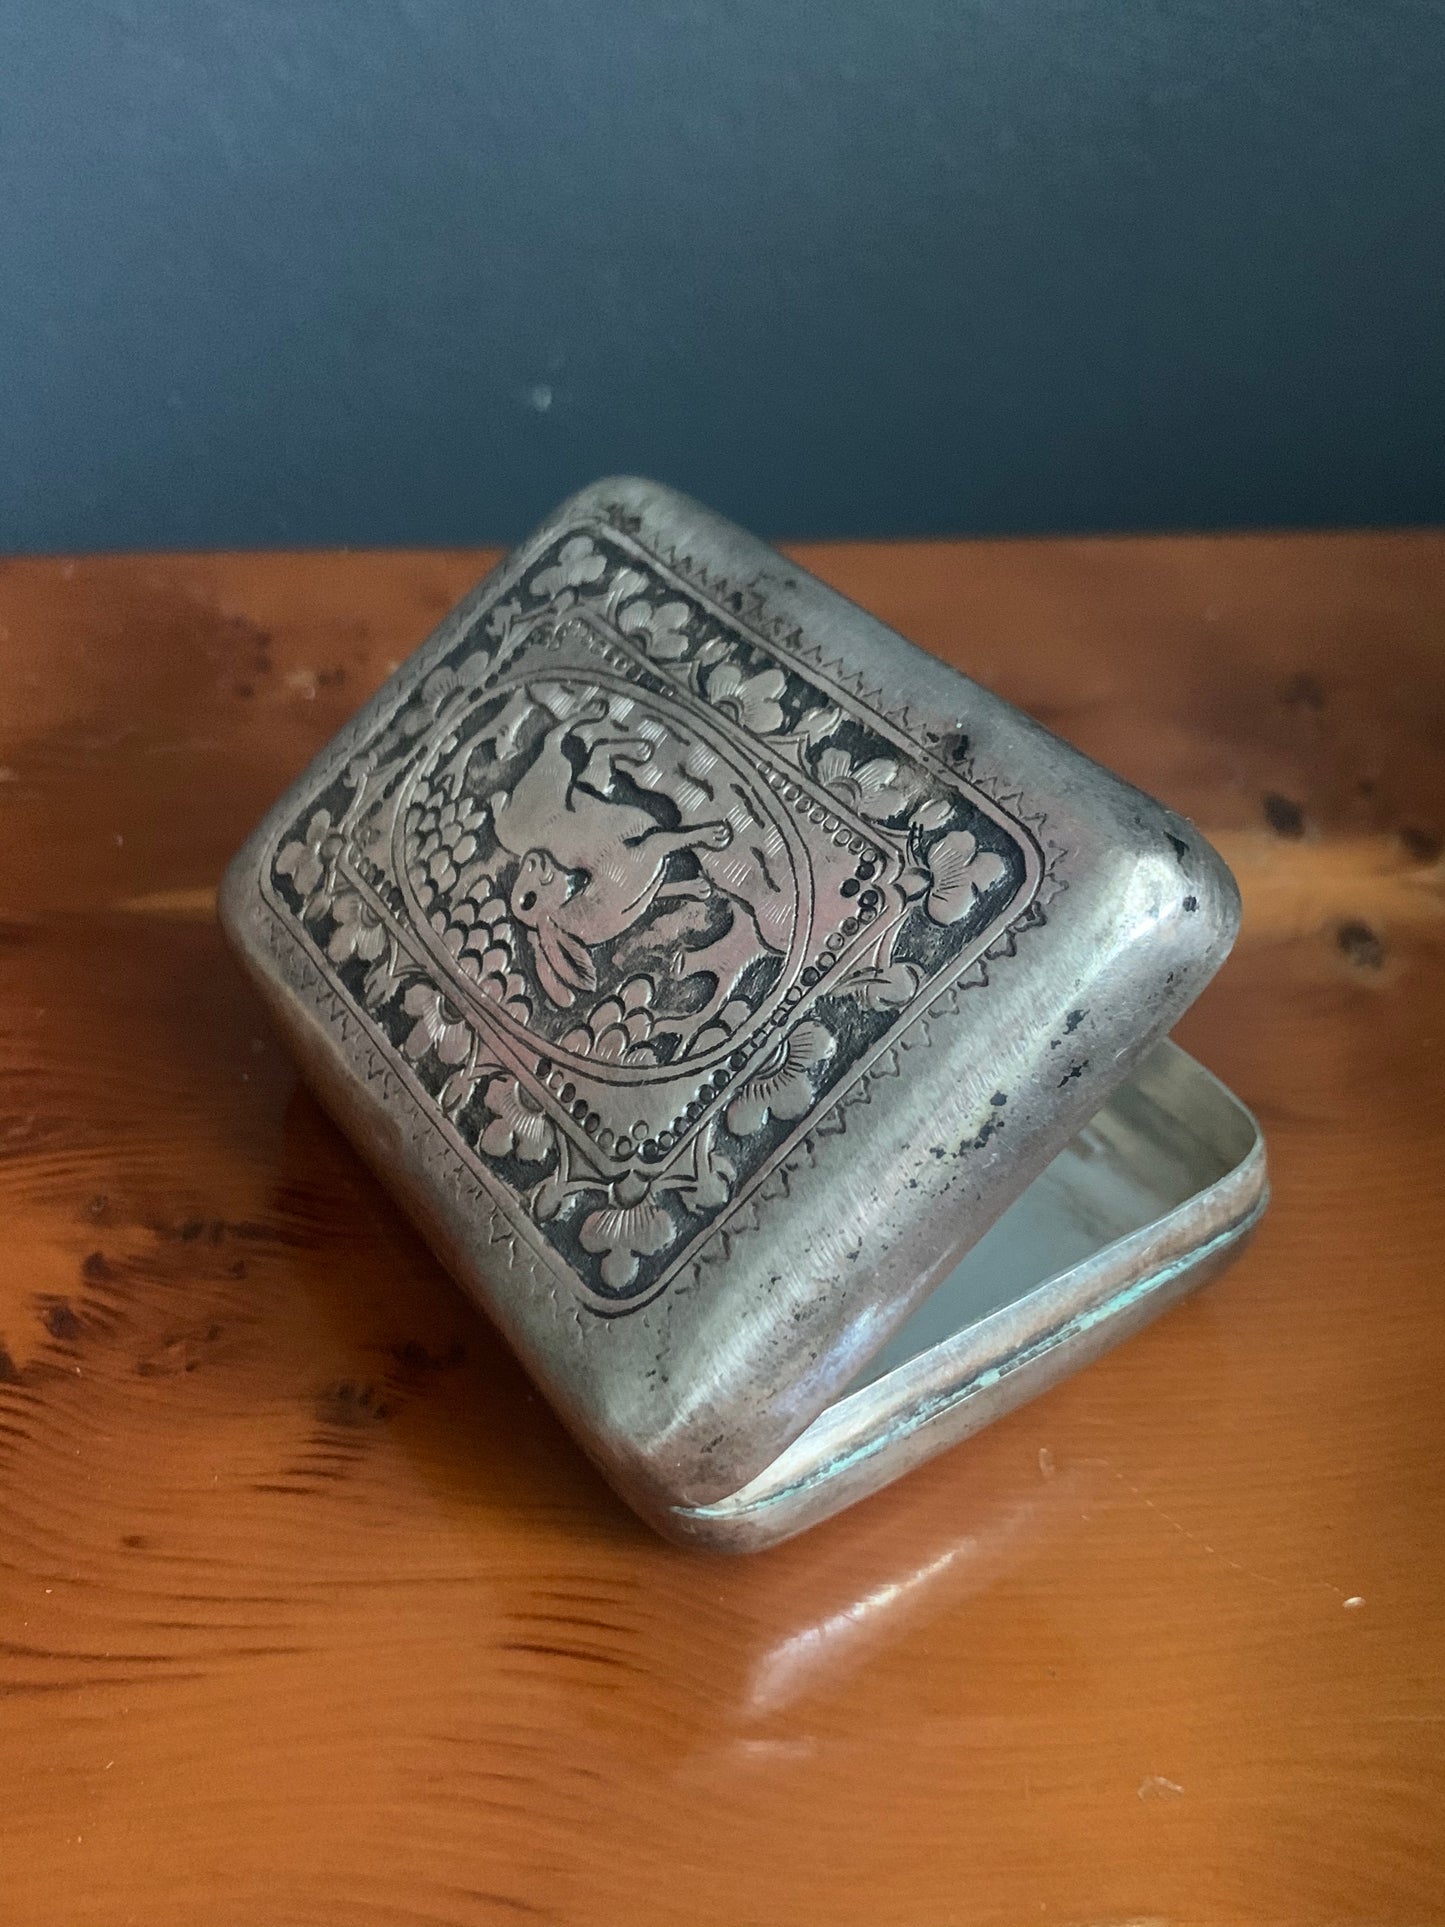 A silver box